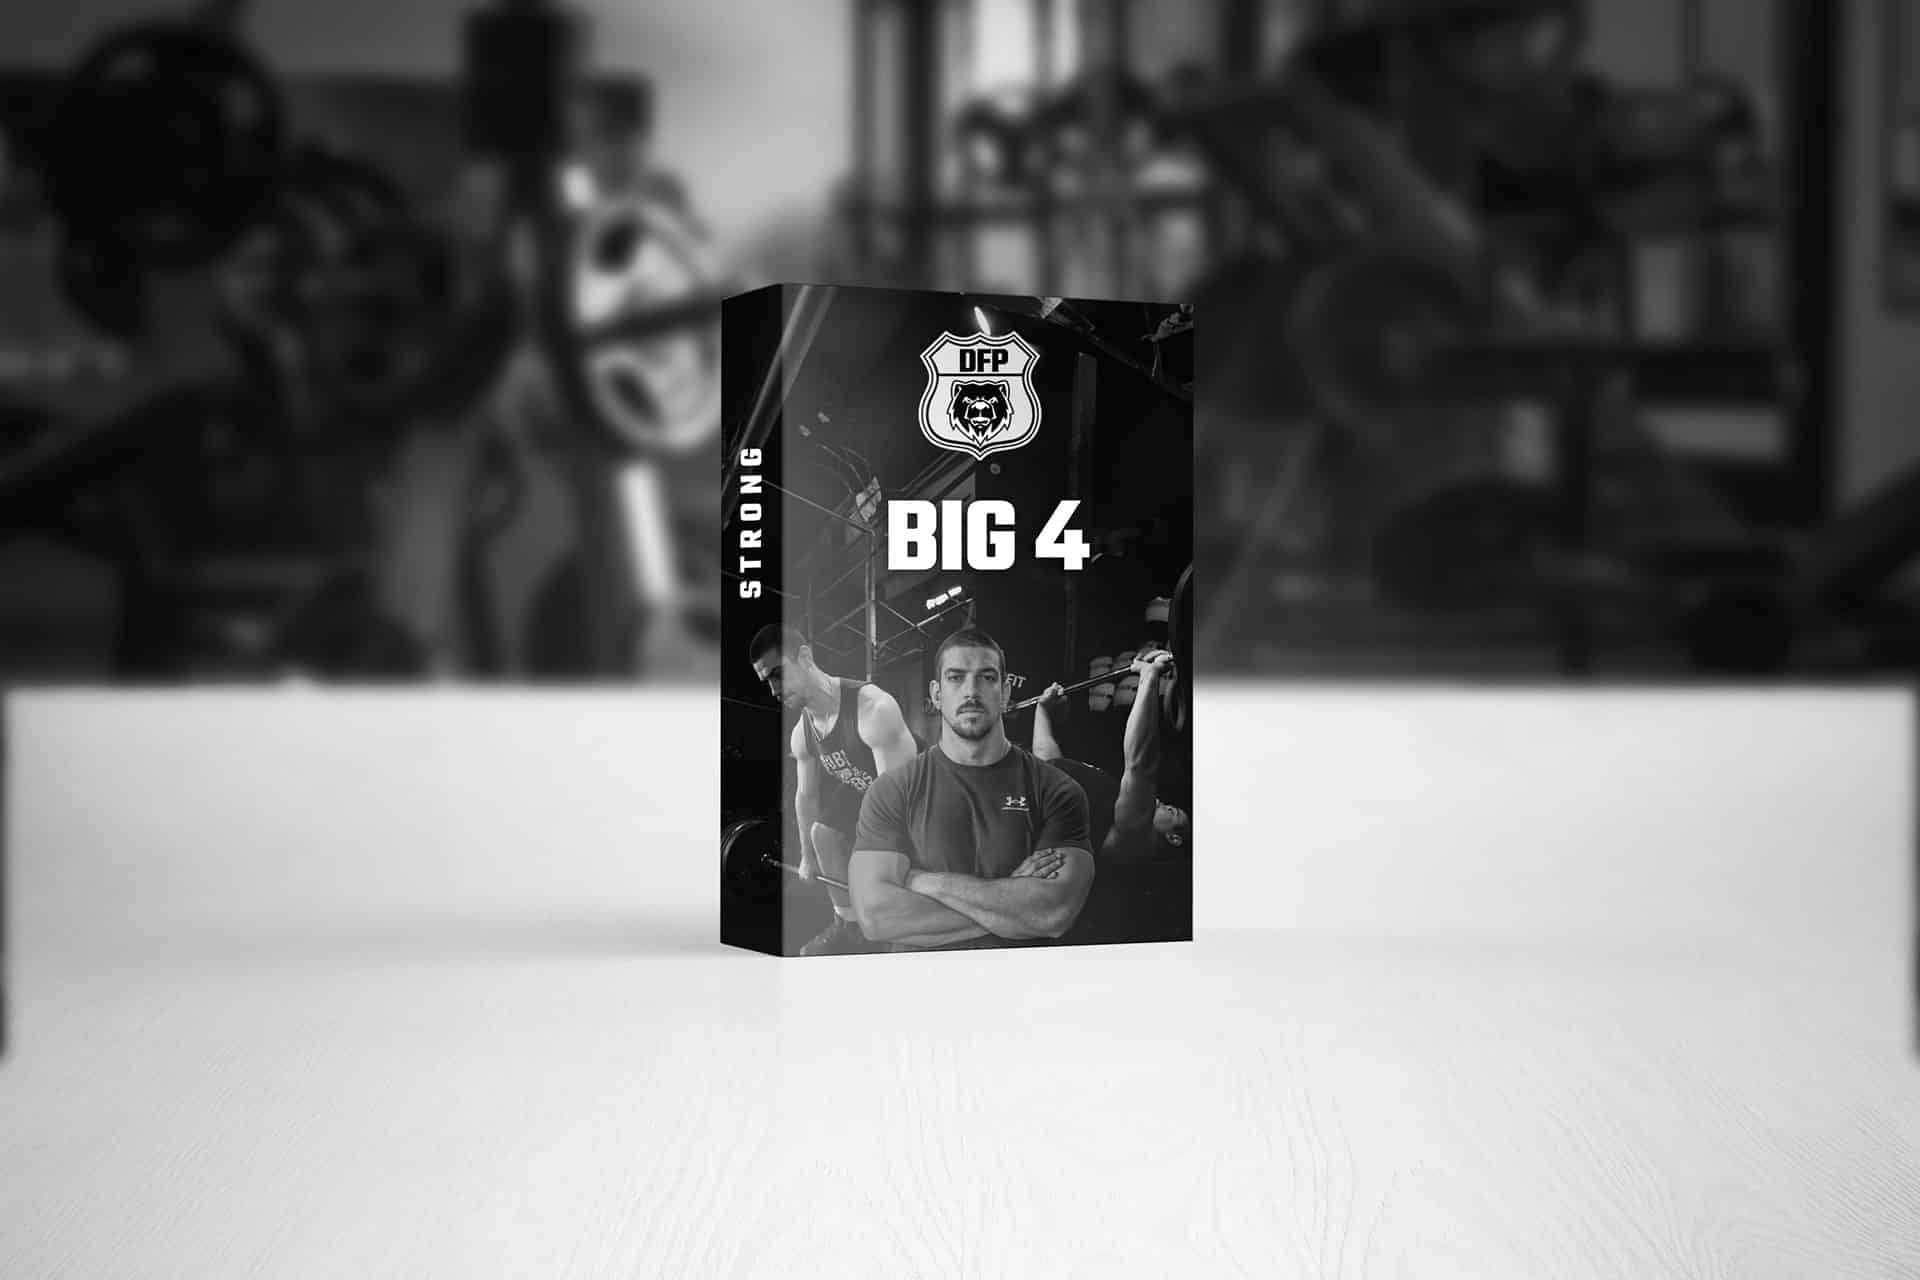 Big 4